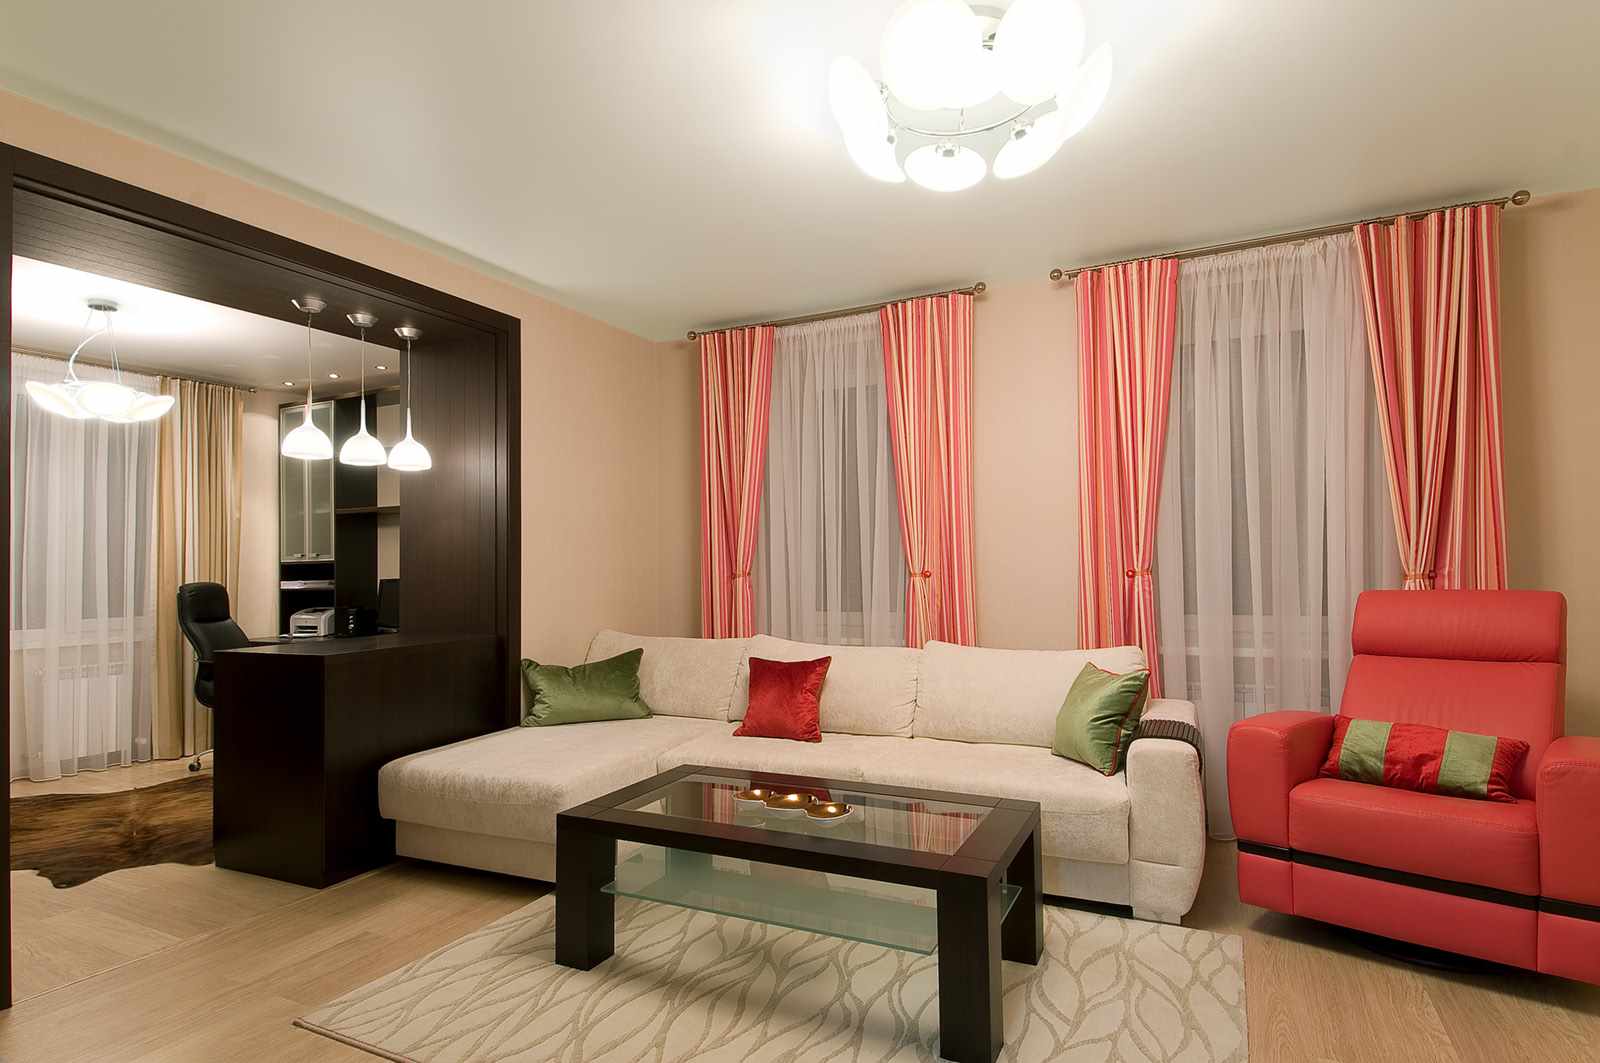 Príklad krásneho interiéru obývacej izby 19-20 m2